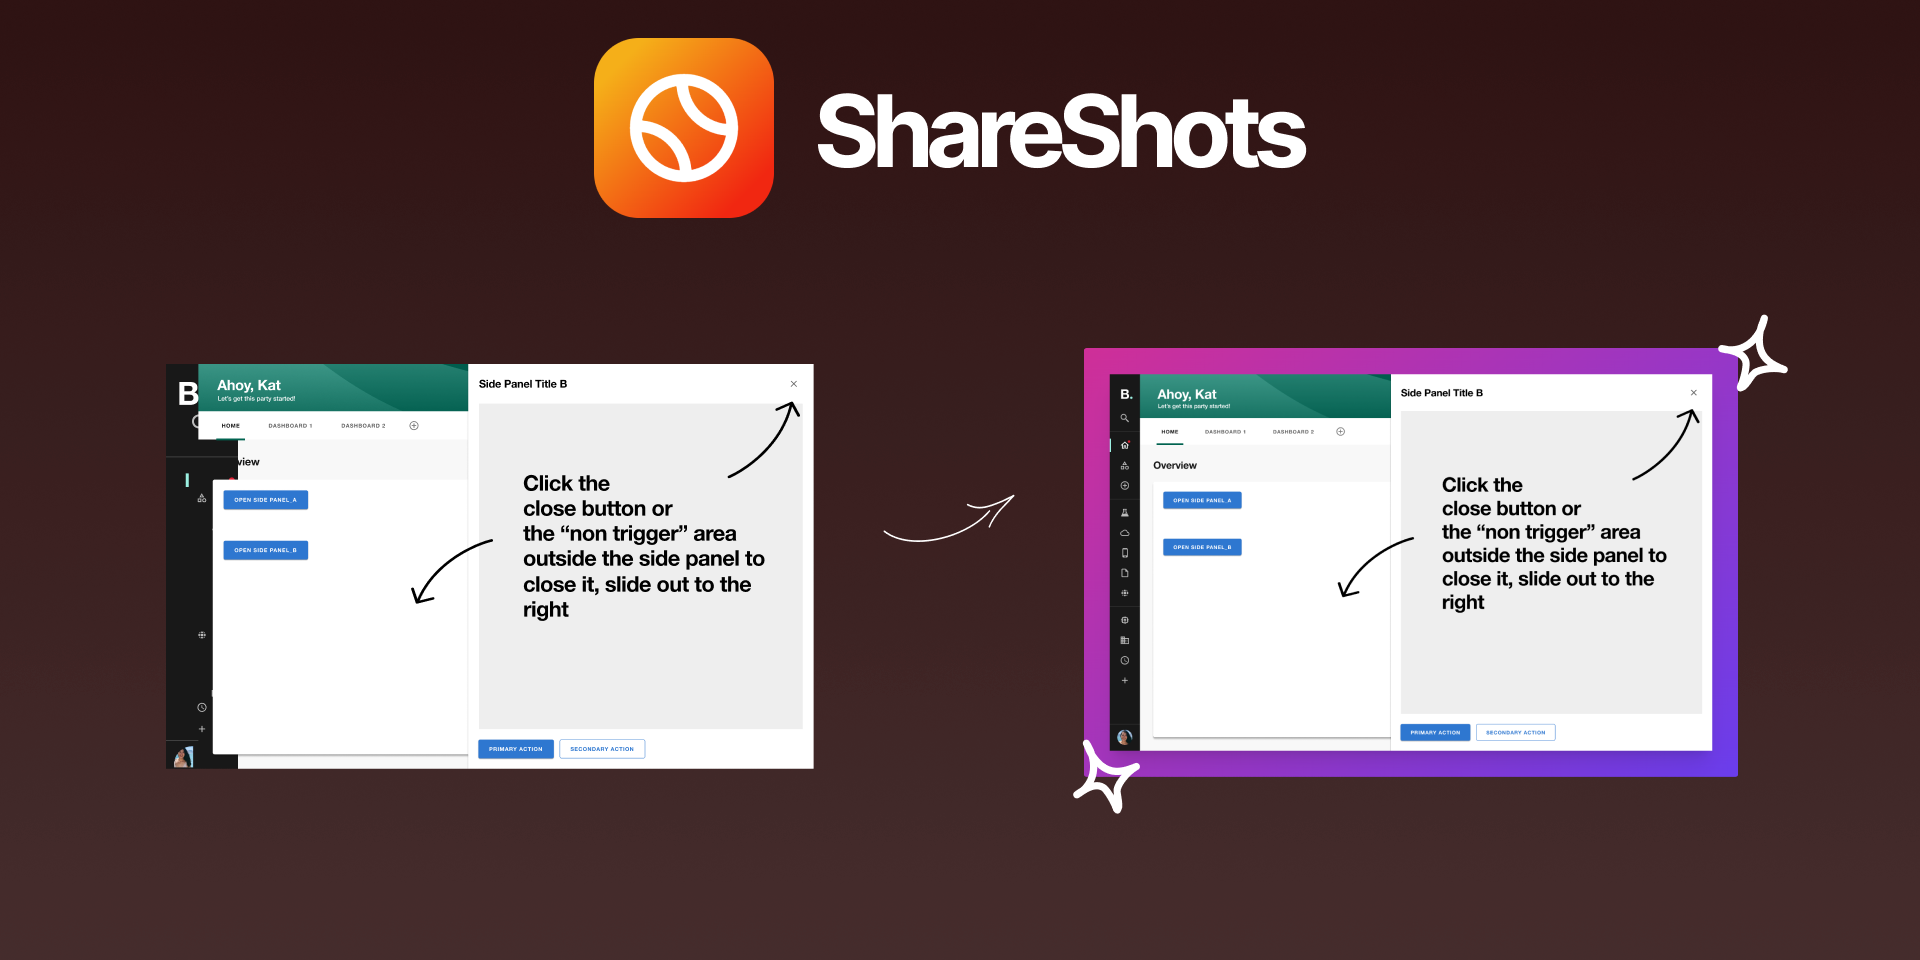 установить плагин для Фигмы ShareShots